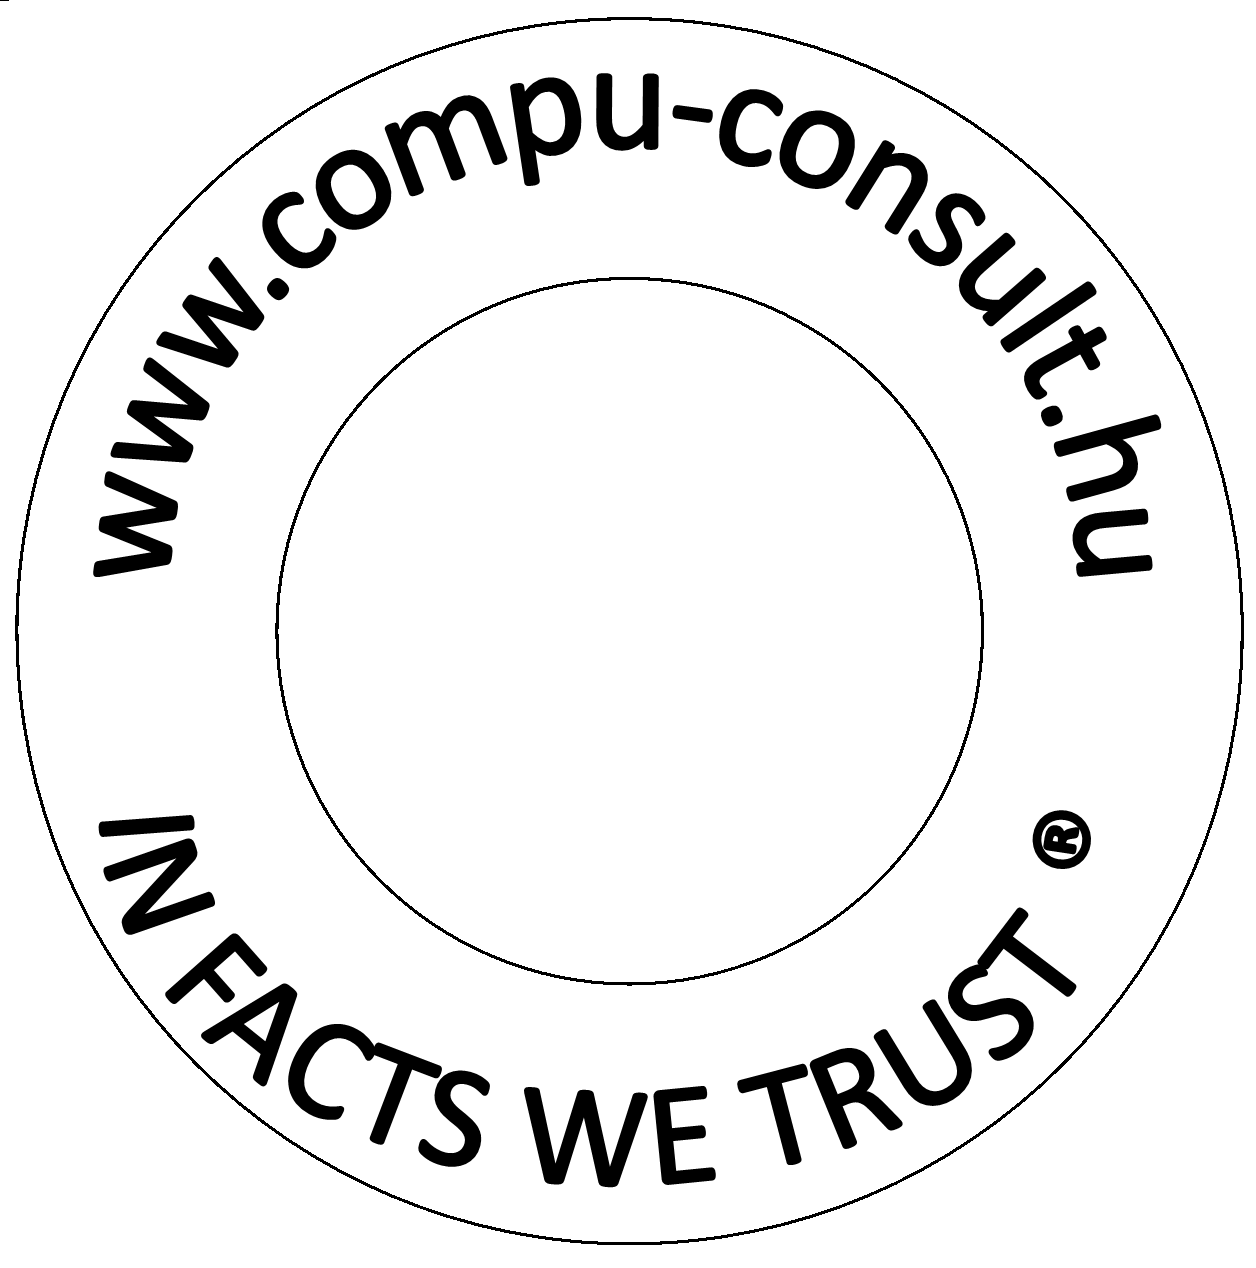 COMPU-CONSULT Ltd.